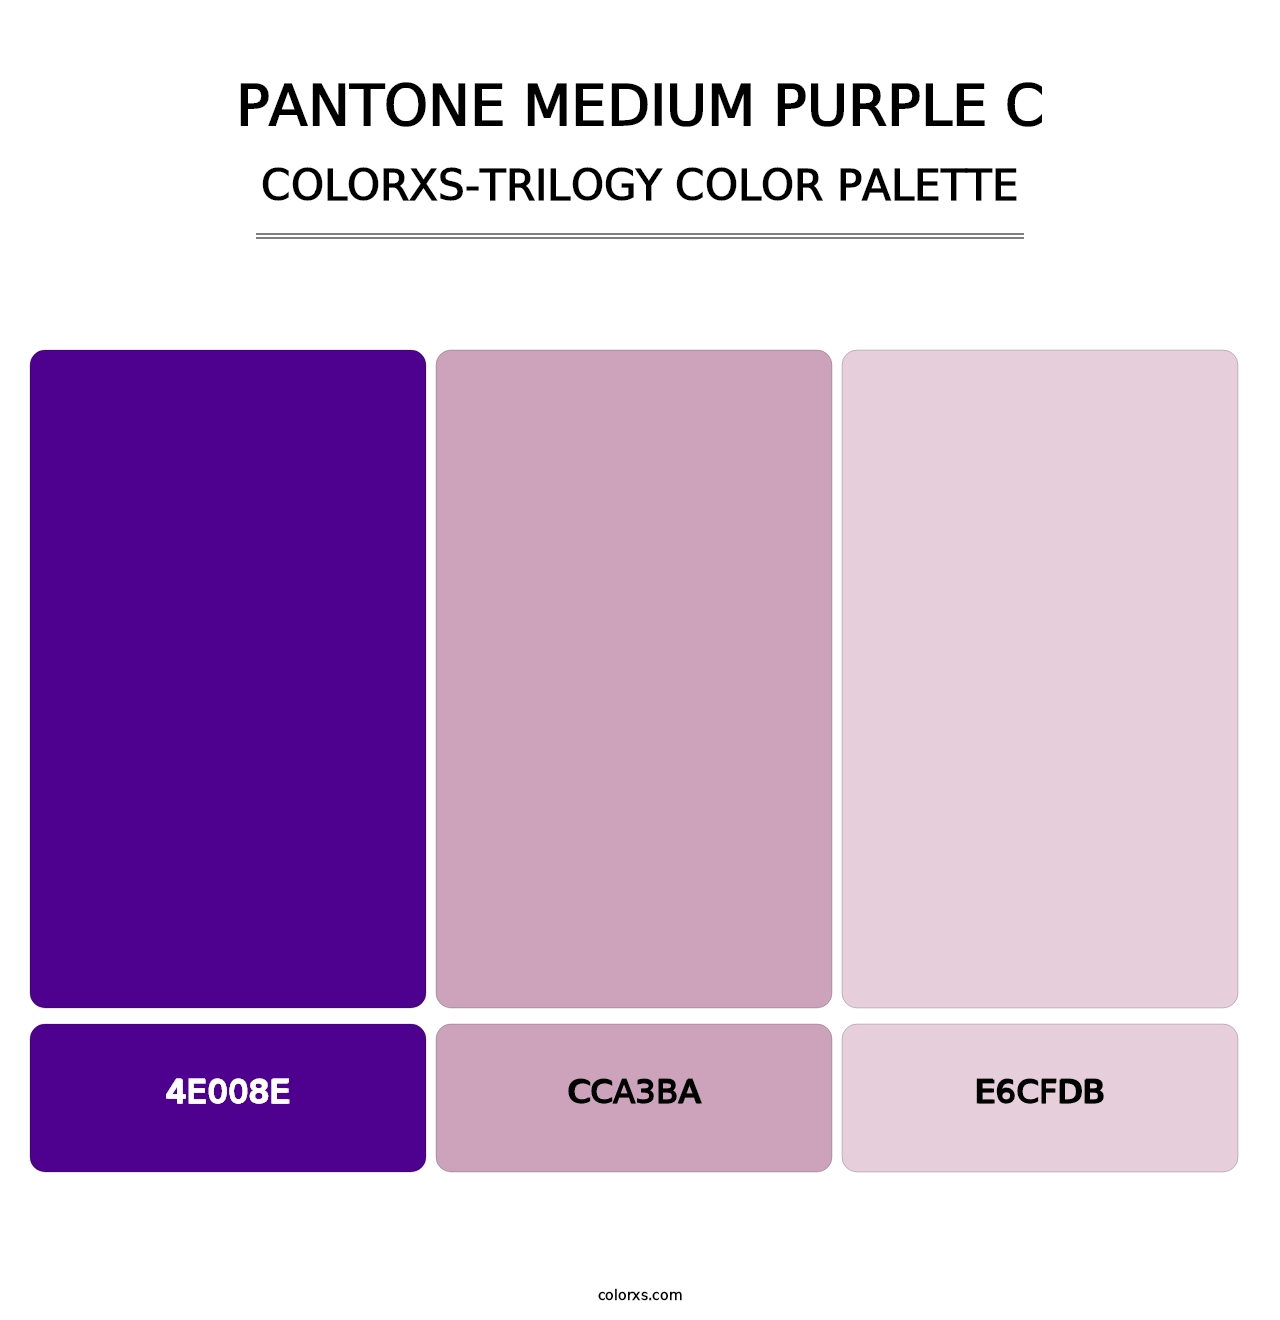 PANTONE Medium Purple C - Colorxs Trilogy Palette